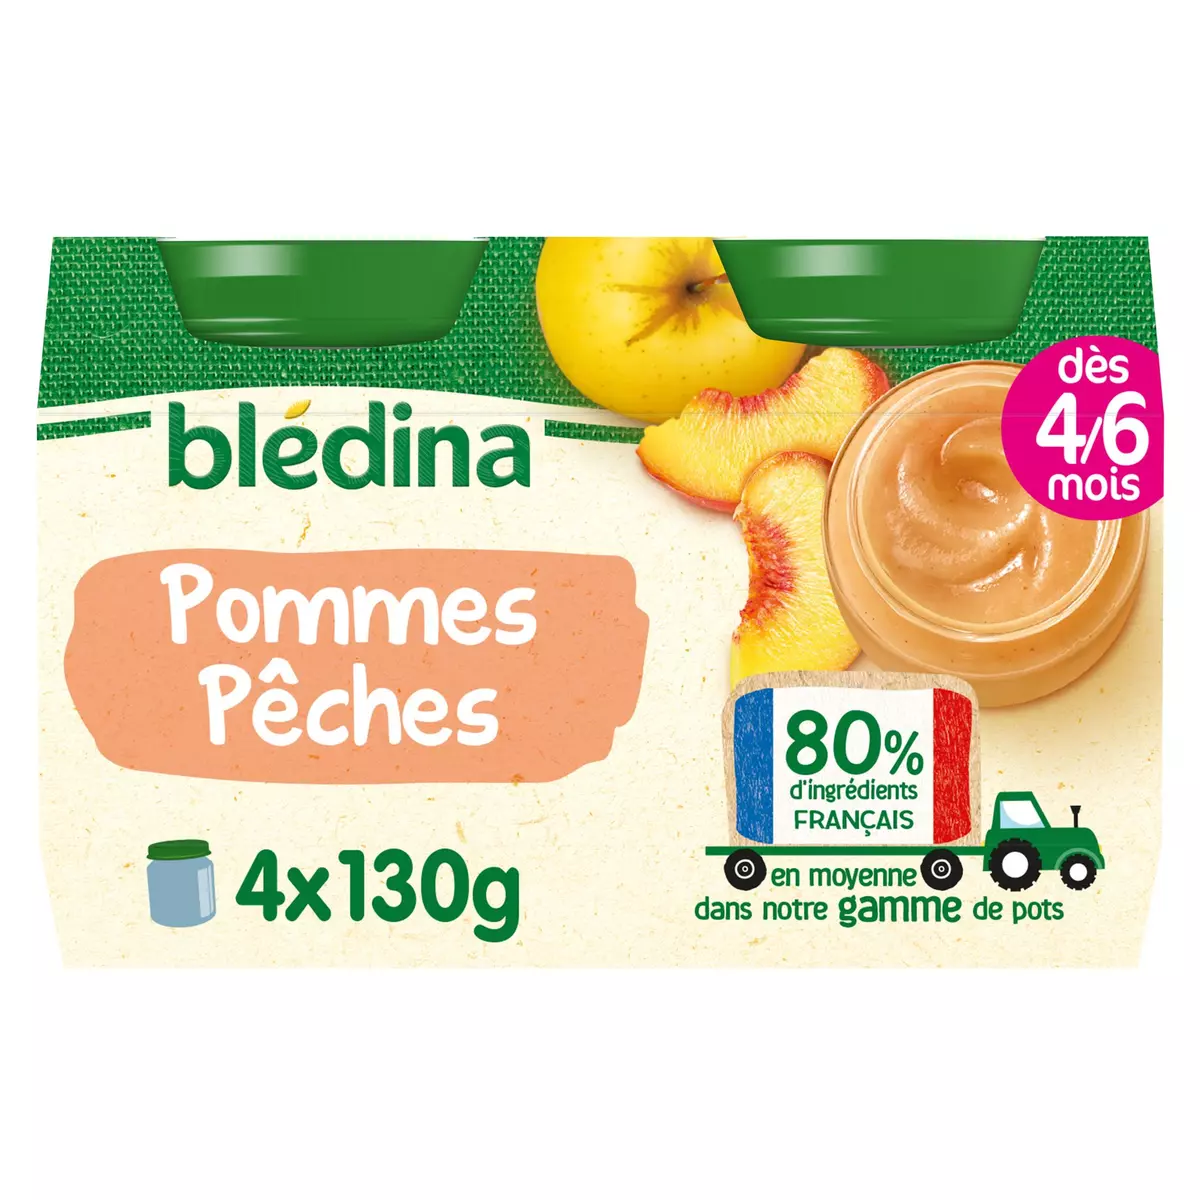 BLEDINA Petit pot dessert pommes pêches dès 4/6 mois 4x130g